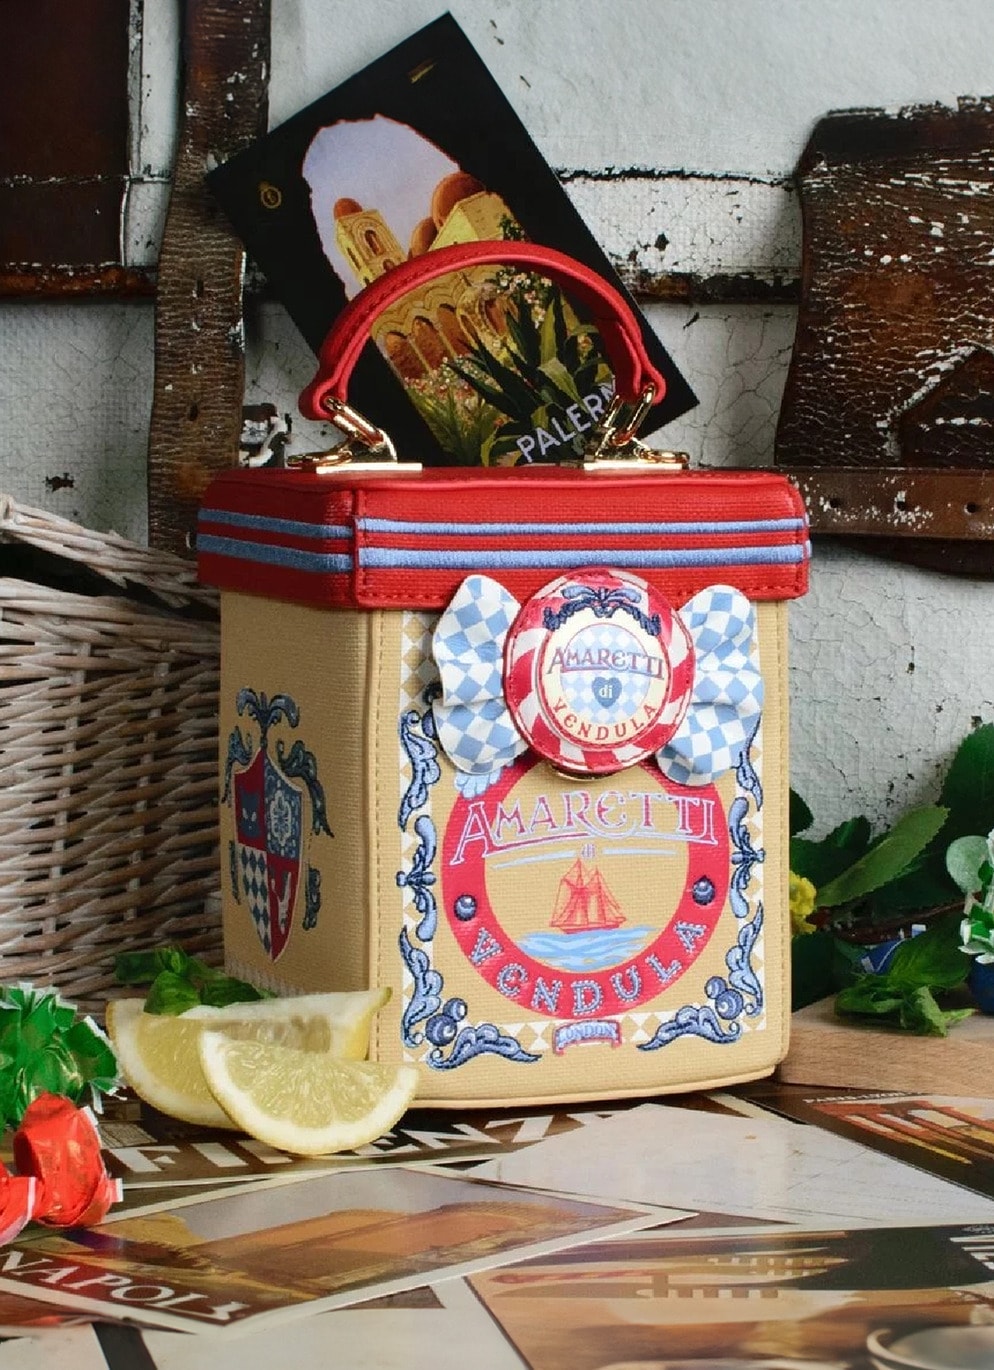 Vendula London Retro Umhänge-Handtasche Amaretti Biscuit Box Bag” in Gelb